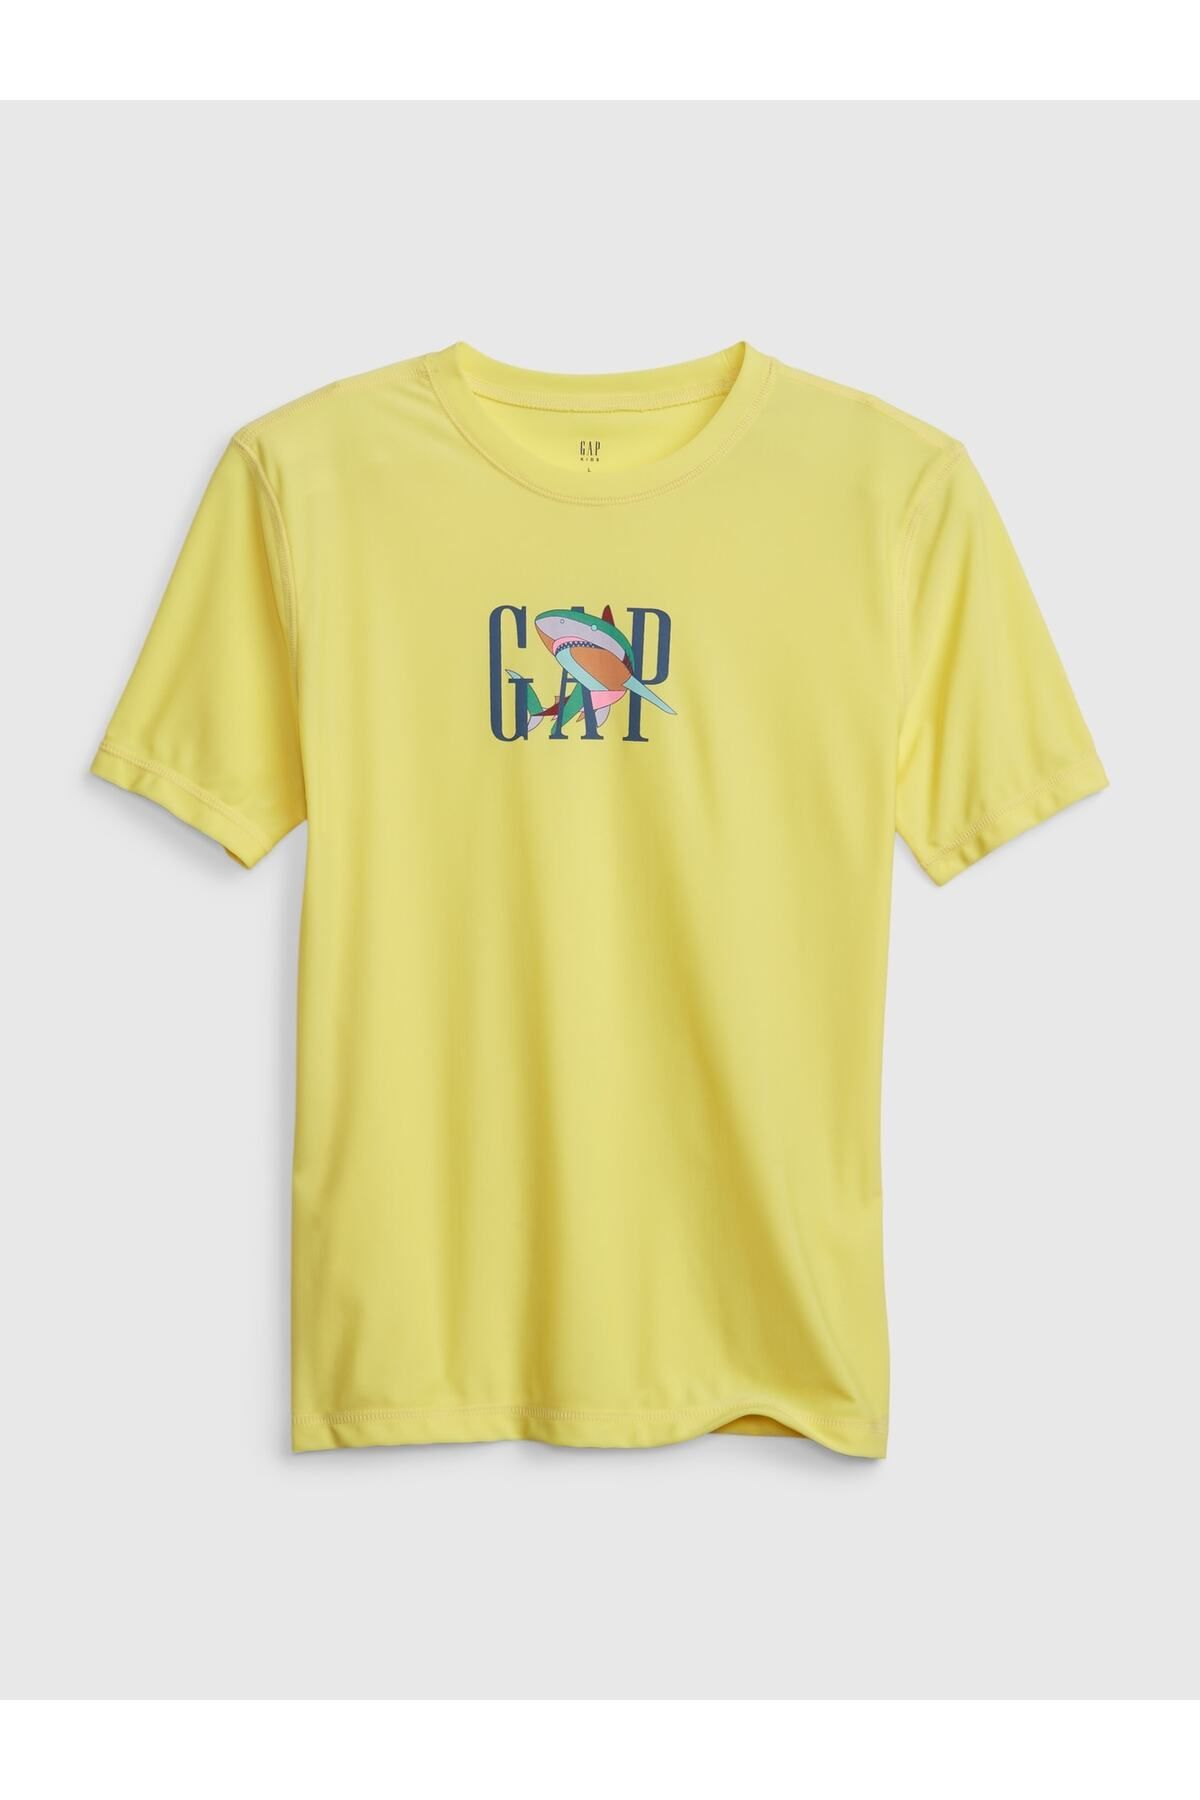 GAP Erkek Çocuk Sarı Geri Dönüştürülmüş Grafikli Mayo T-shirt